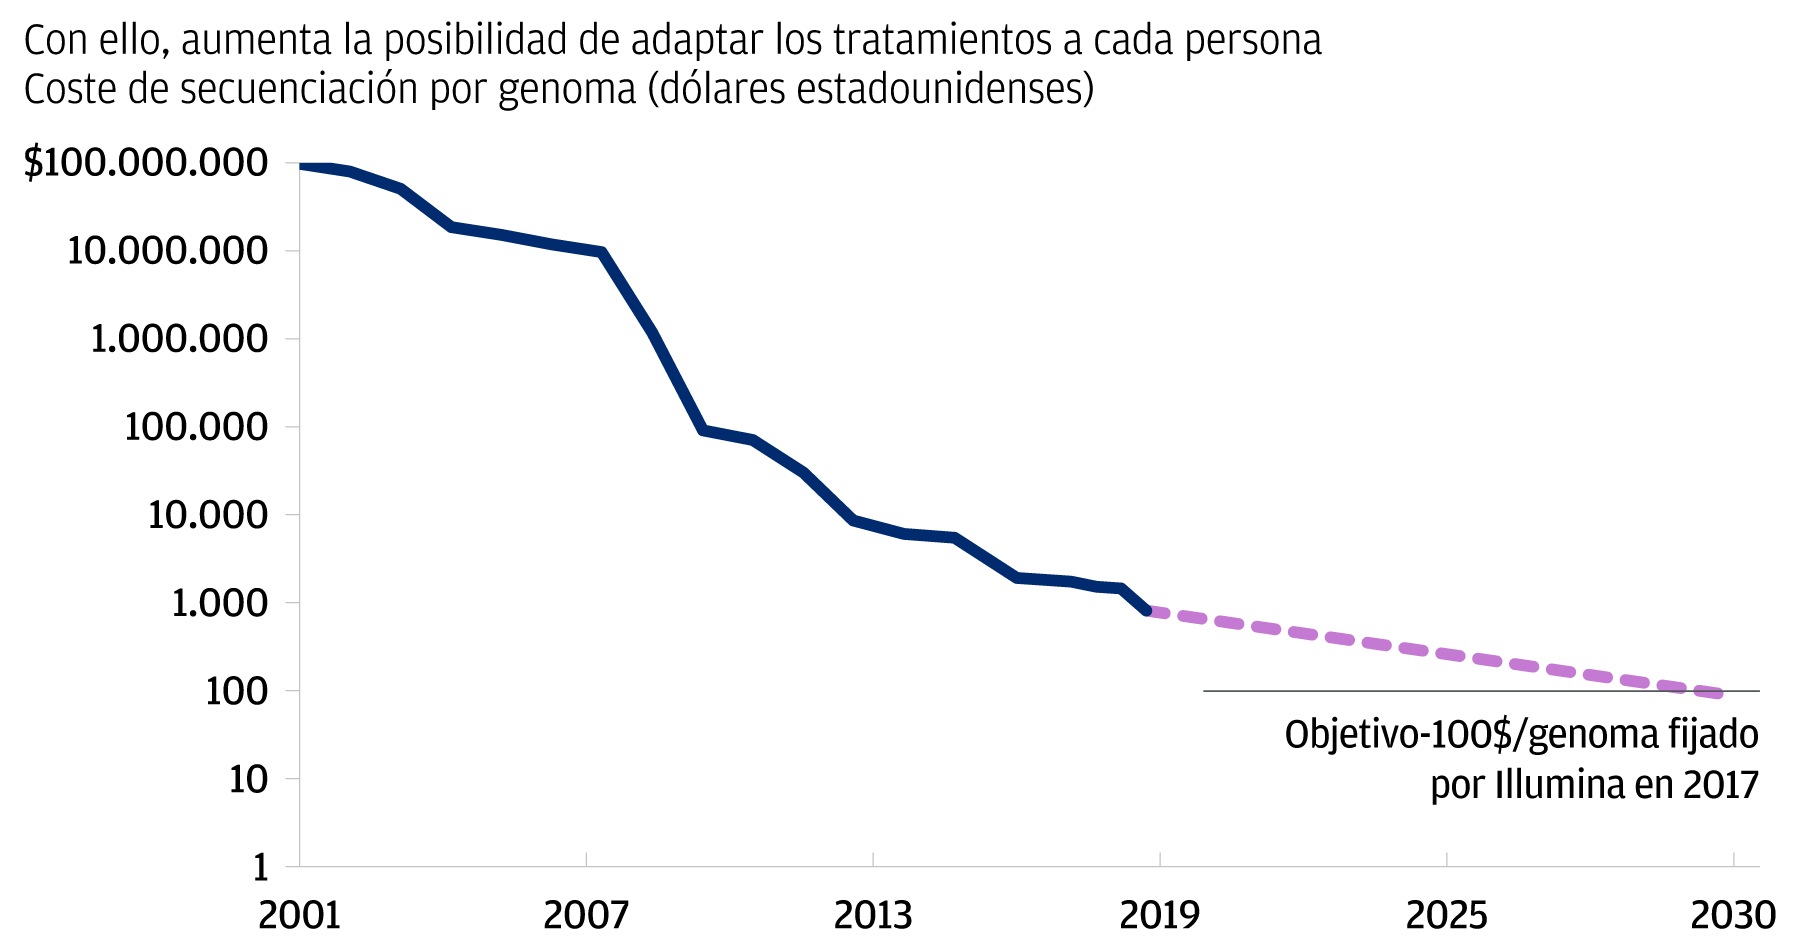 Este gráfico muestra la reducción significativa de elaborar el perfil de ADN desde el año 2001 y su proyección decreciente hasta le 2030. En el año 2001, el costo de secuenciación por genoma eran 100 millones de dólares, y decrece hasta alrededor de 1.000 dólares en 2019. Para el 2030, se espera que el costo baje hasta los 100 dólares.